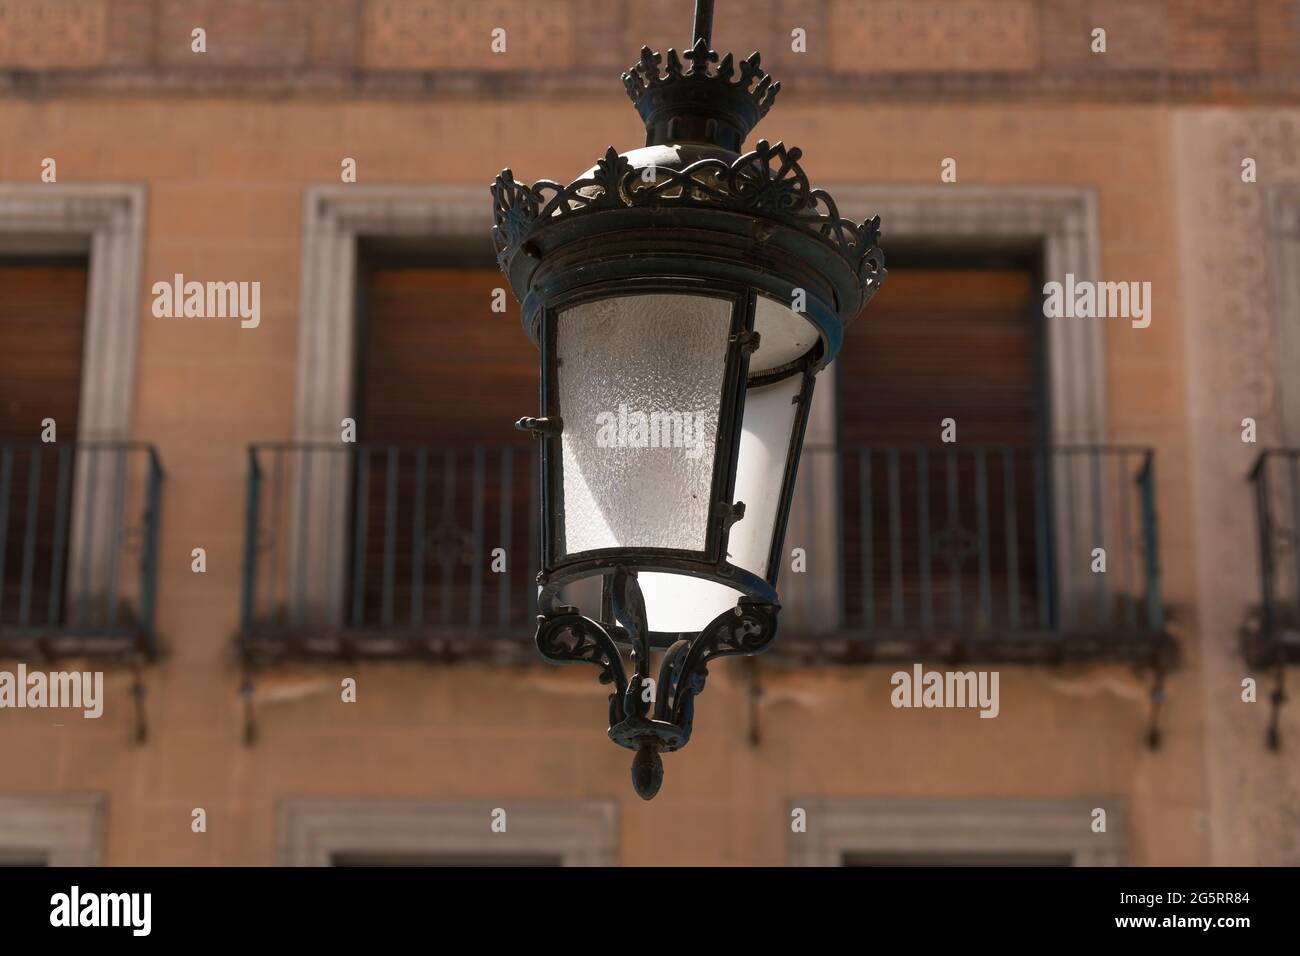 Segovia, España - 2 de junio de 2021: Una de las lámparas de hierro forjado de estilo clásico que cuelgan en las arcadas de la Avenida del Acueducto, en el centro de la ciudad Foto de stock